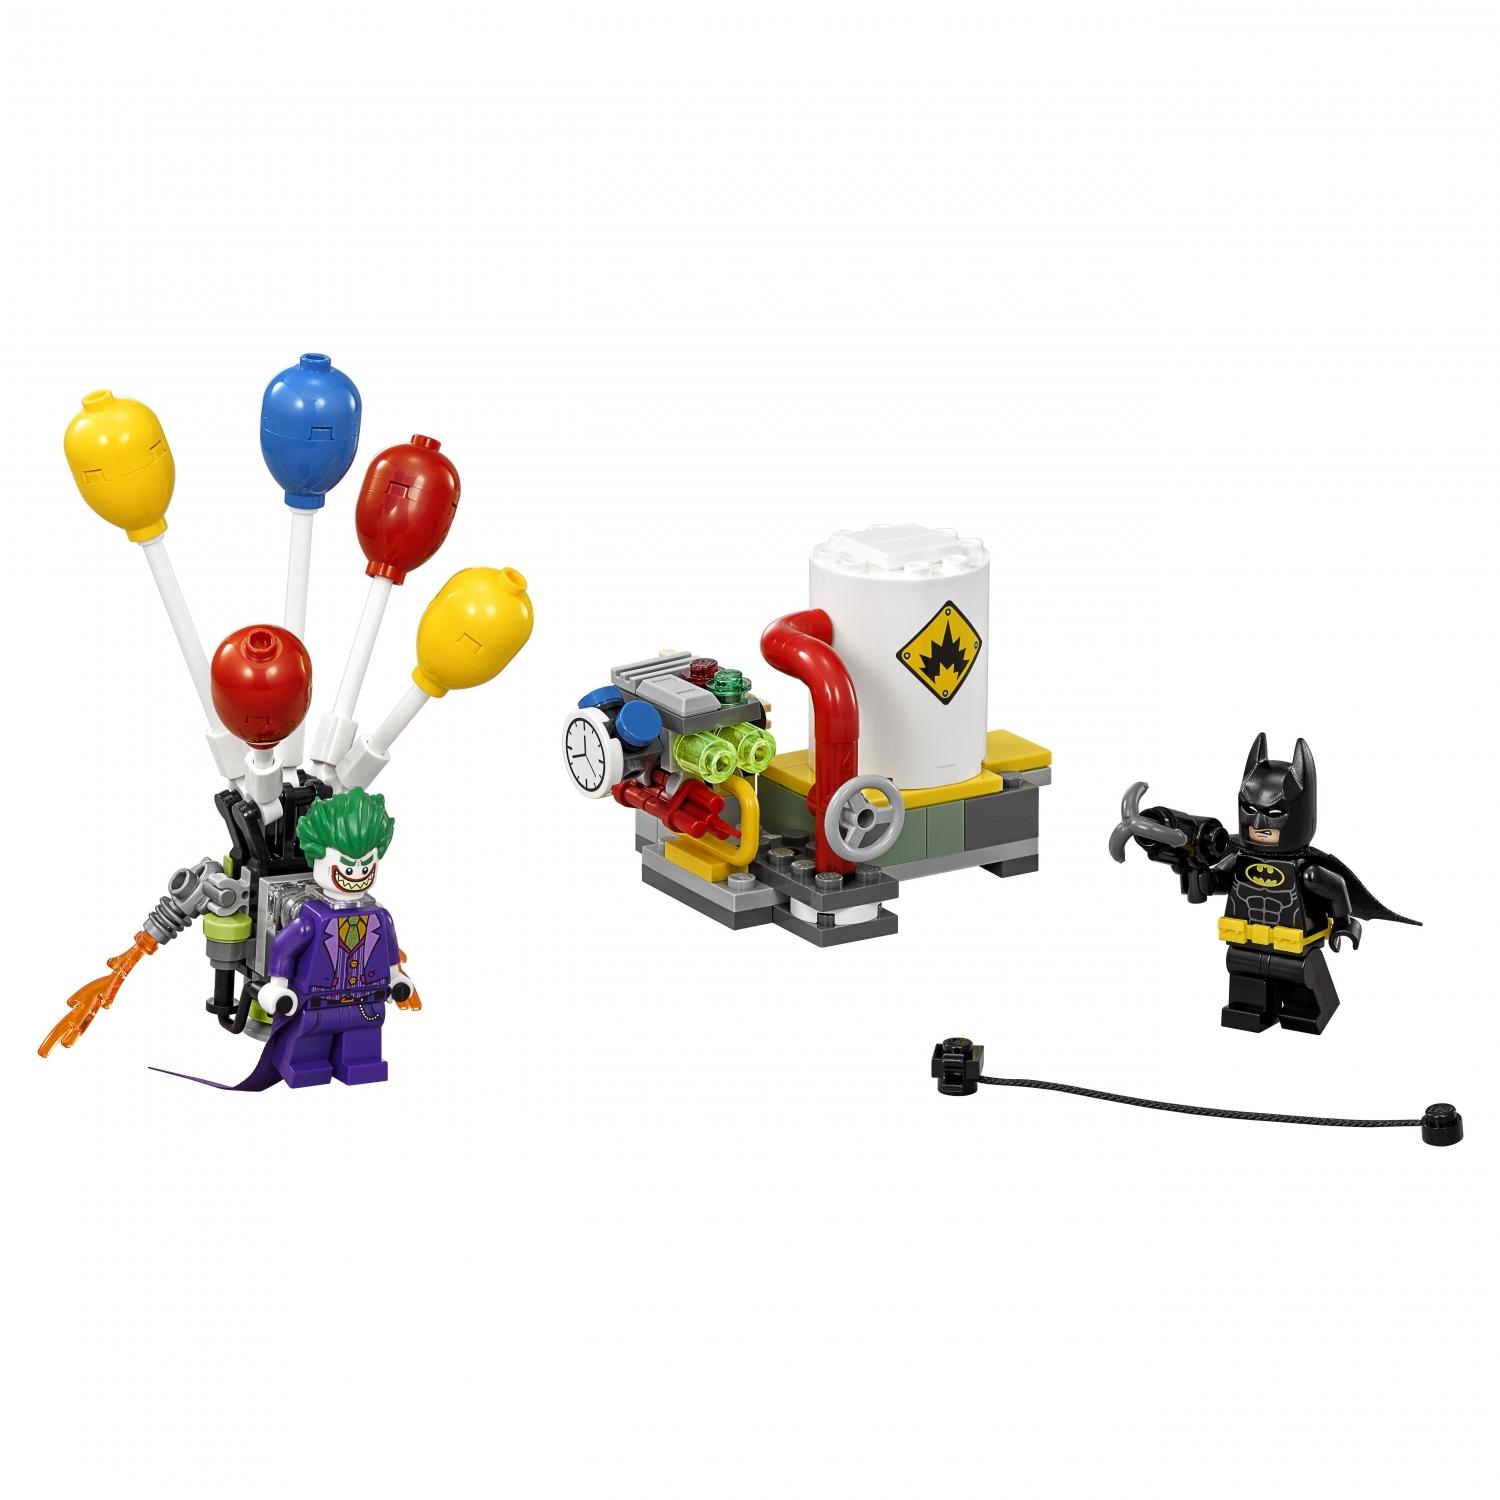 Lego Batman 70900 Побег Джокера на воздушном шаре